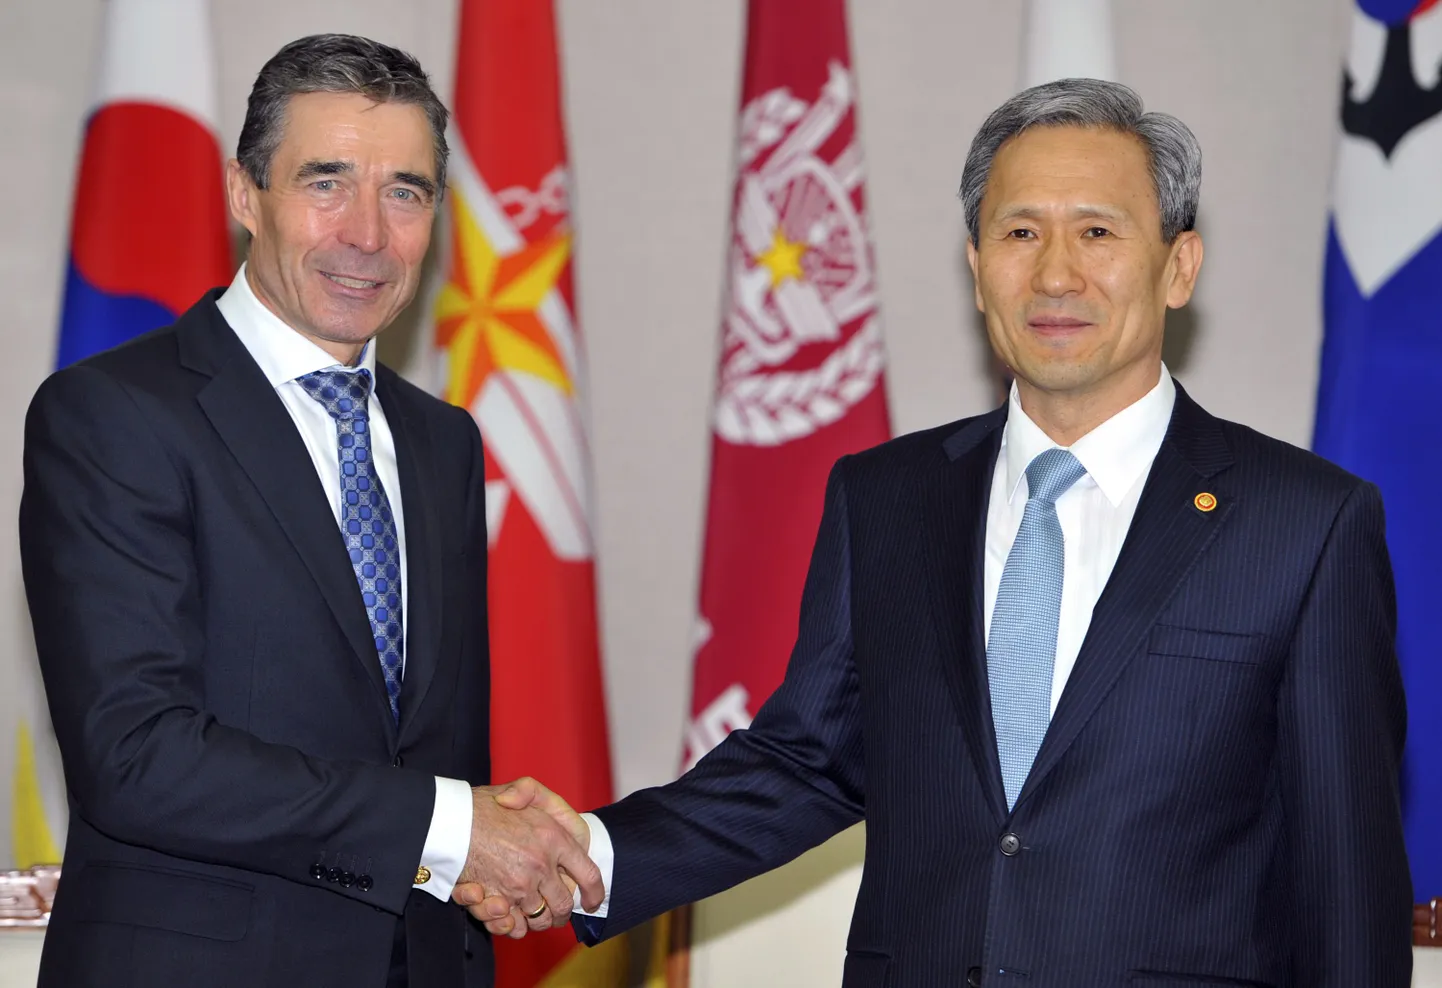 NATO peasekretär Anders Fogh Rasmussen (vasakul) koos Lõuna-Korea kaisteministri Kim Kwan-jiniga.